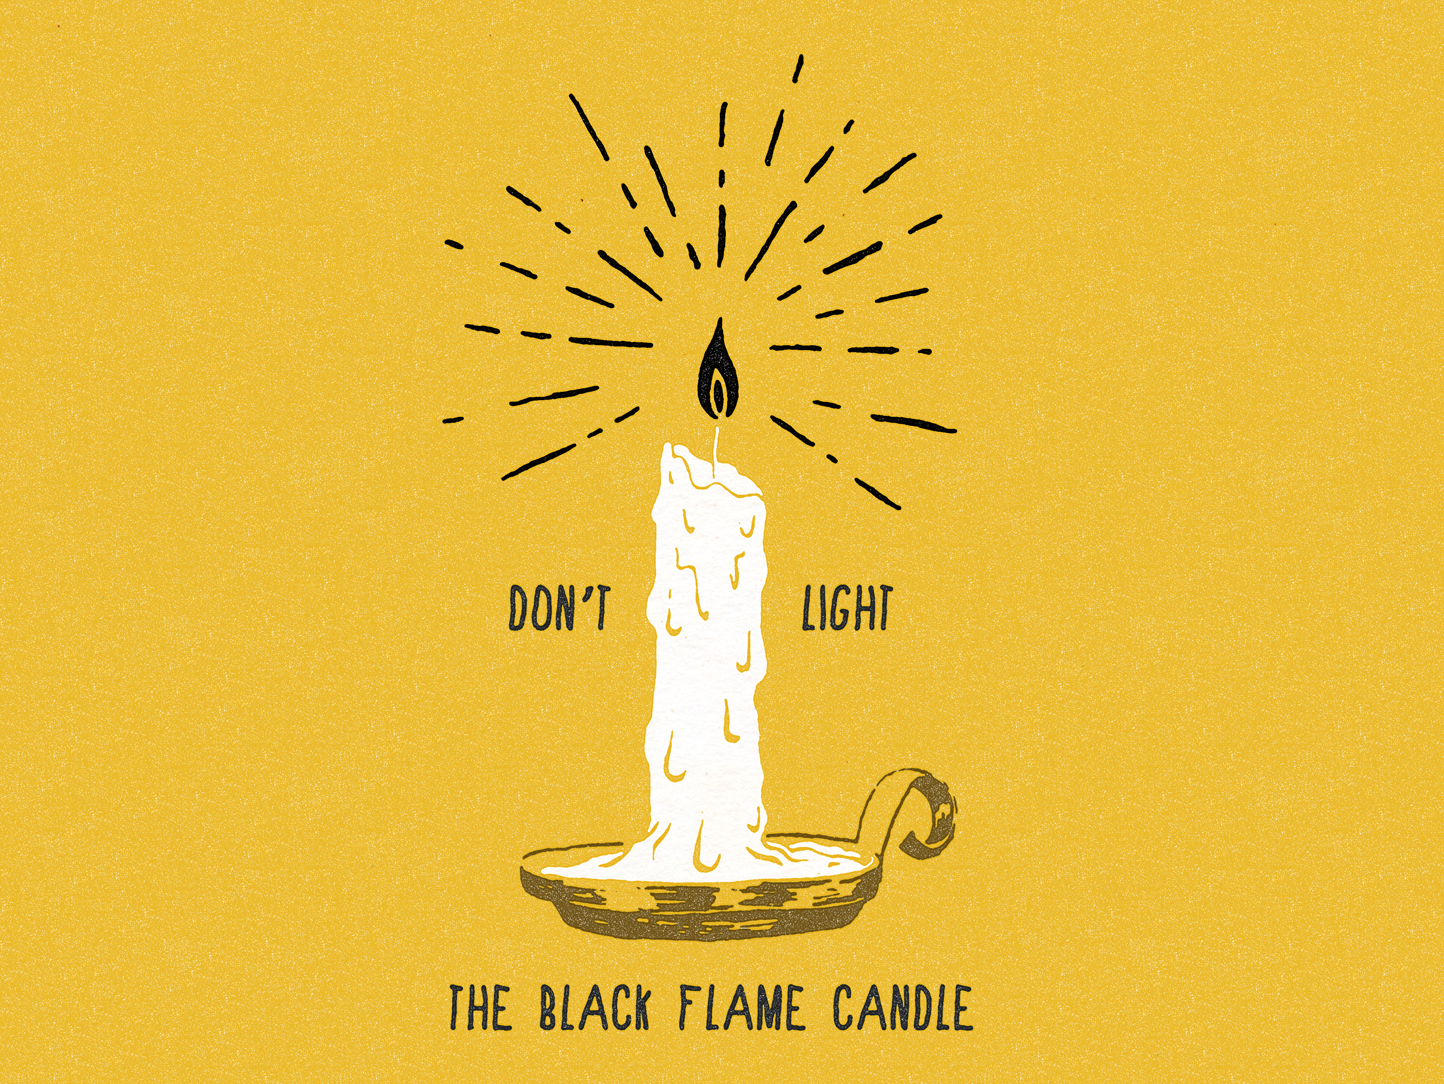 Black flame candle shot. black-flame-candle-shot.jpg. 